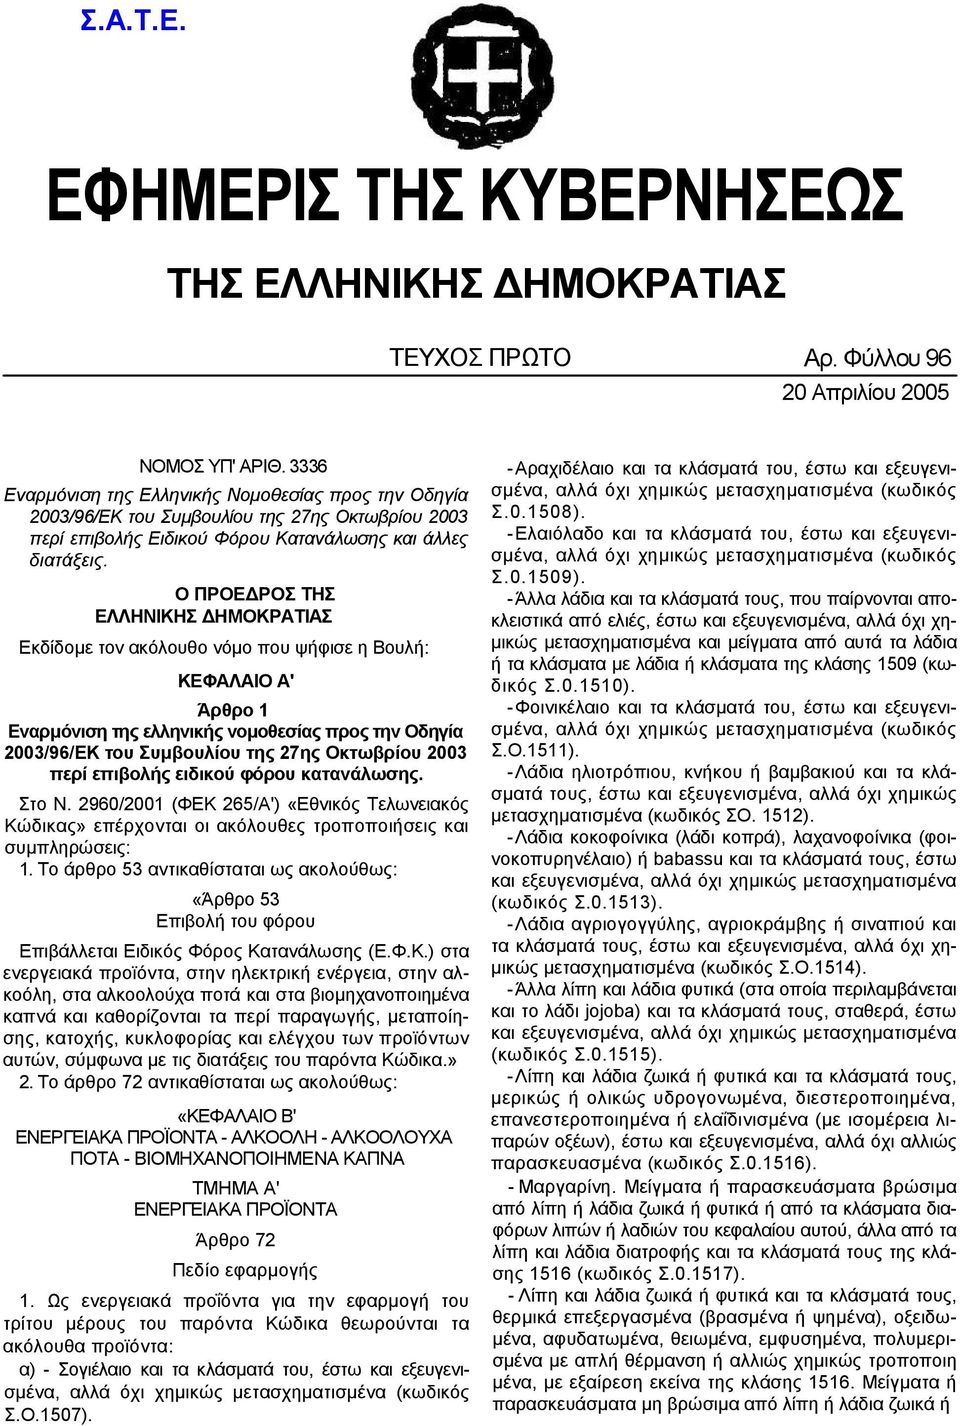 Ο ΠΡΟΕ ΡΟΣ ΤΗΣ ΕΛΛΗΝΙΚΗΣ ΗΜΟΚΡΑΤΙΑΣ Εκδίδοµε τον ακόλουθο νόµο που ψήφισε η Βουλή: ΚΕΦΑΛΑΙΟ Α' Άρθρο 1 Εναρµόνιση της ελληνικής νοµοθεσίας προς την Οδηγία 2003/96/ΕΚ του Συµβουλίου της 27ης Οκτωβρίου